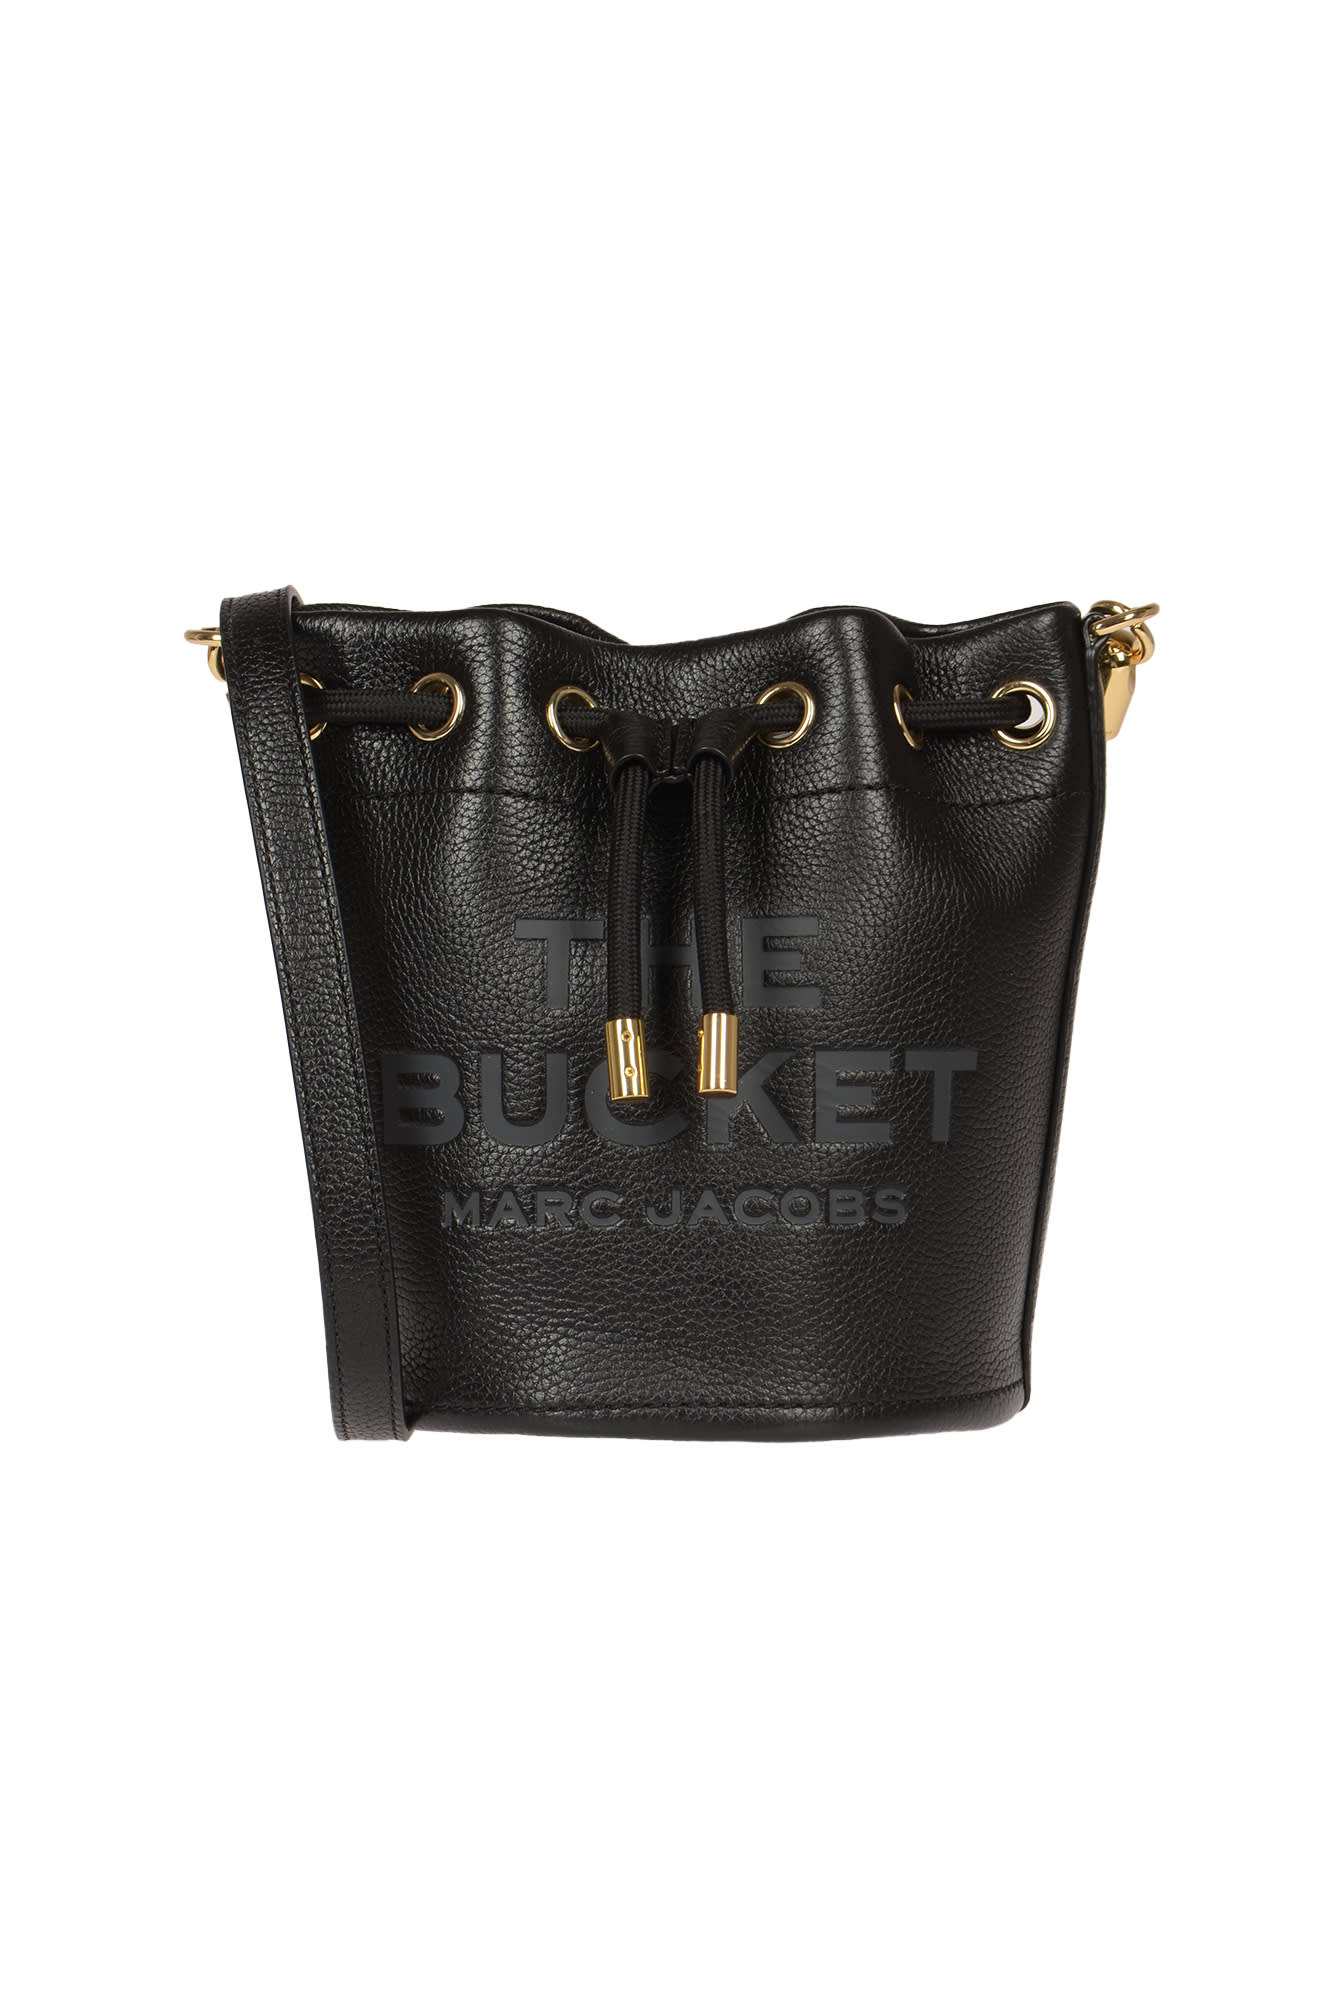 Marc Jacobs The Bucket Bucket Bag In Black